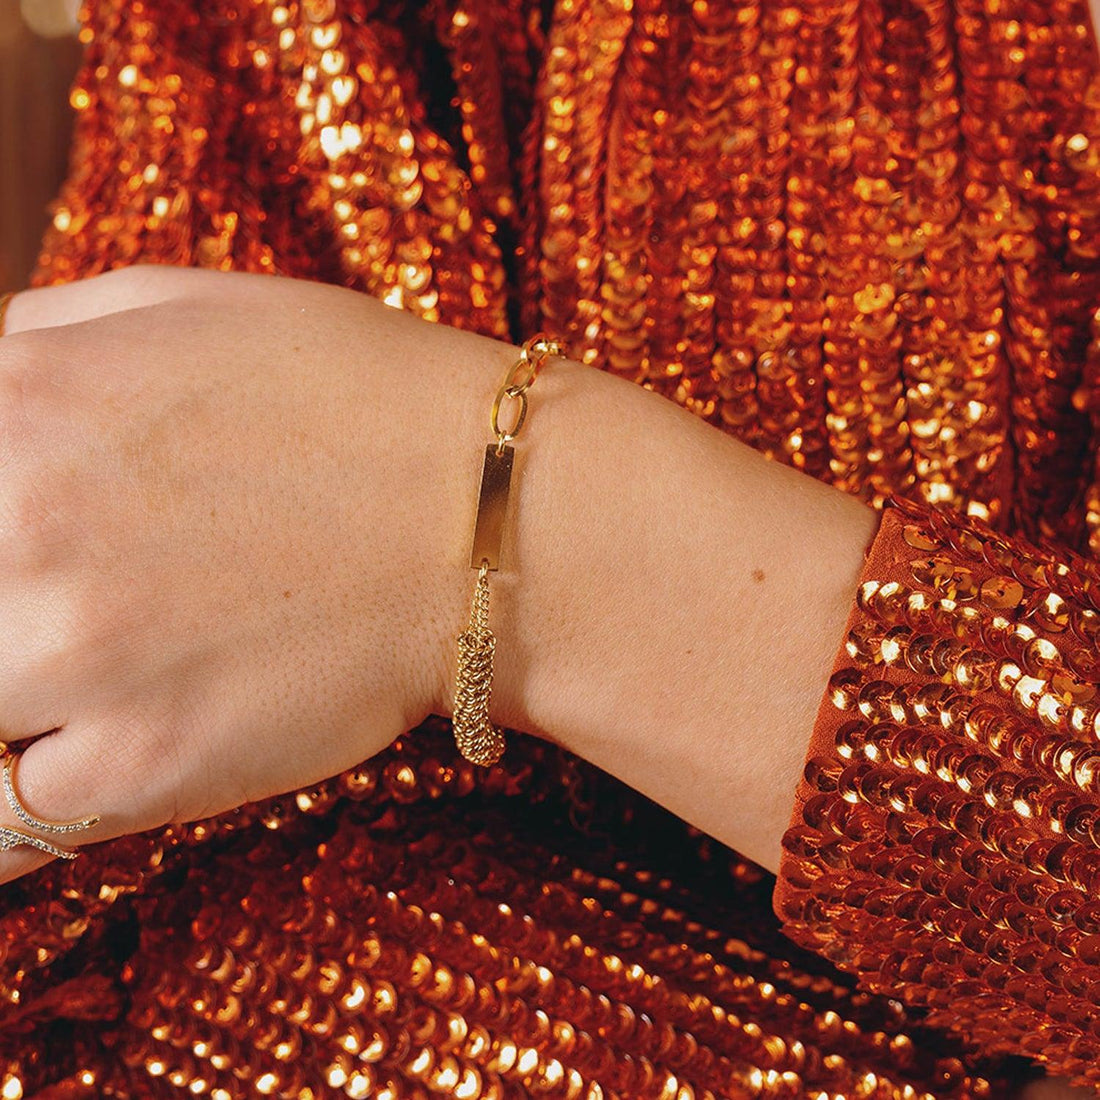 Gouden chain armband met plaatje er aan. De armband is gemaakt van roestvrij staal met een gold plated laagje. De ketting is waterproof en verkleurt niet. Afmetingen: 16 + 3 cm.